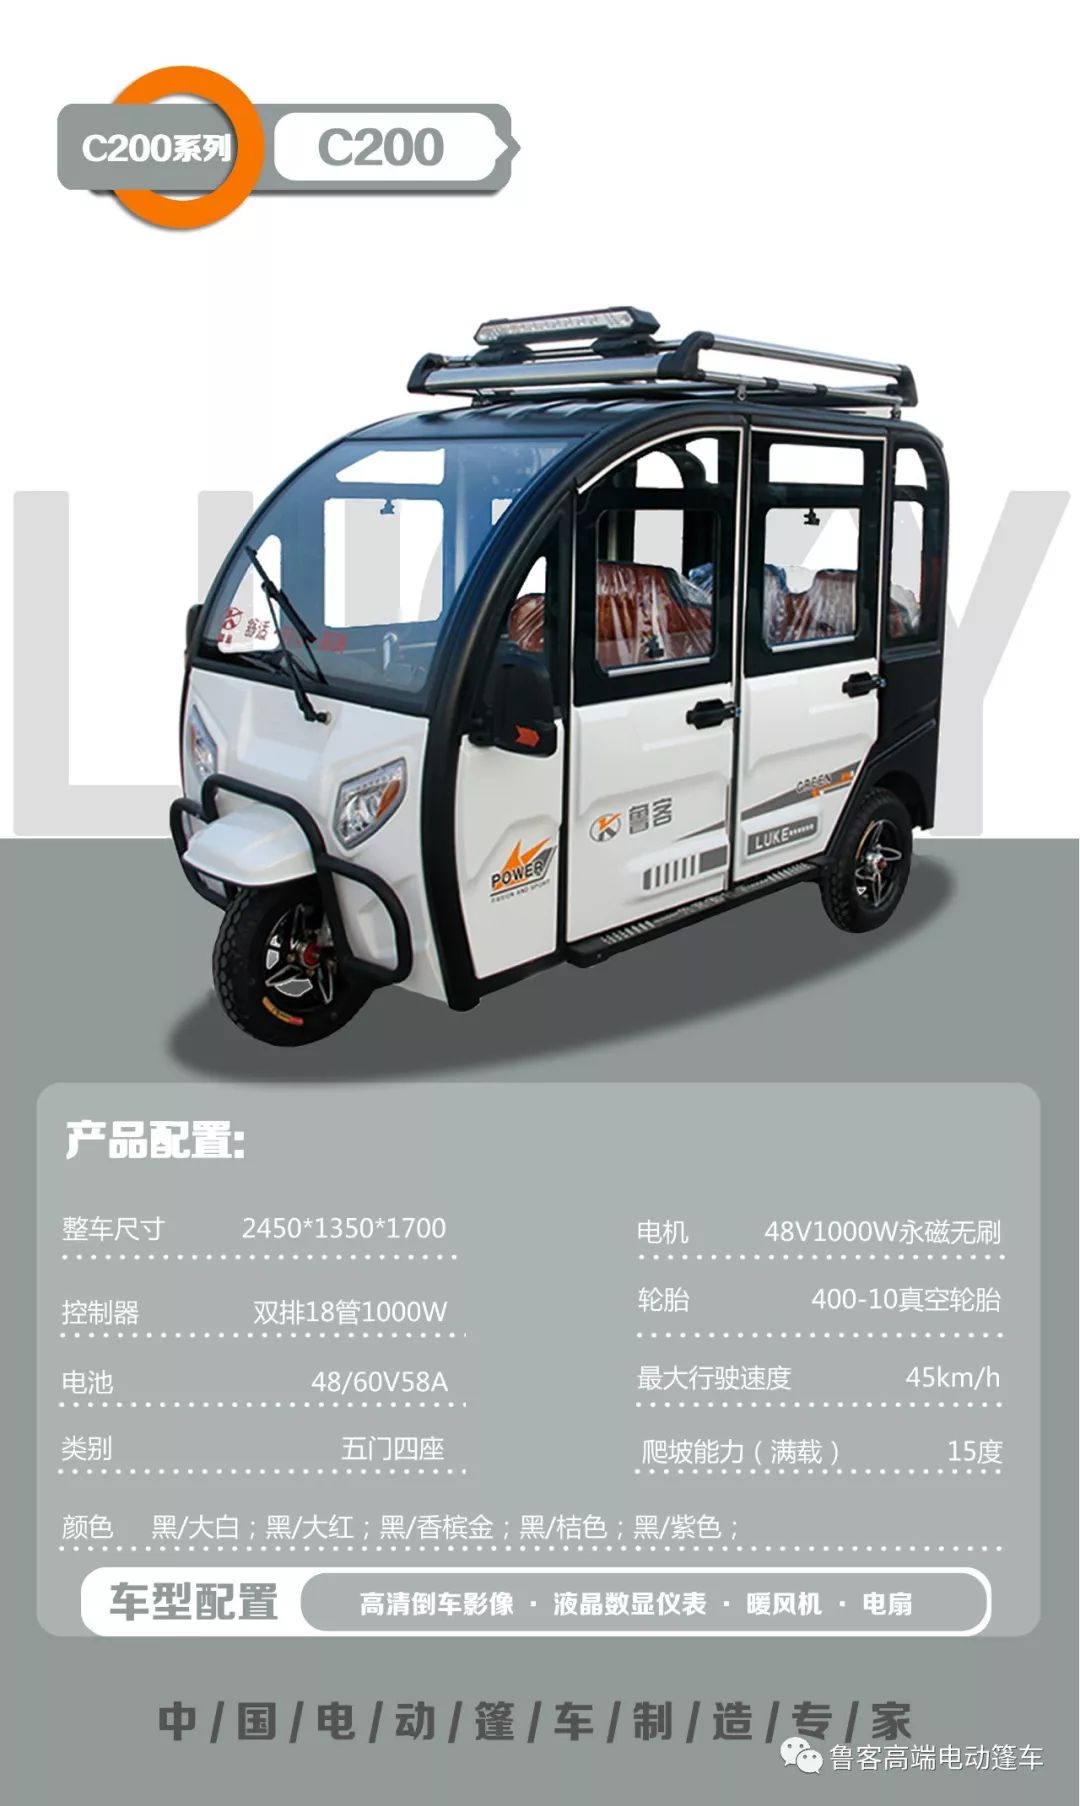 中国电动篷车制造专家——鲁客篷车全系列产品介绍